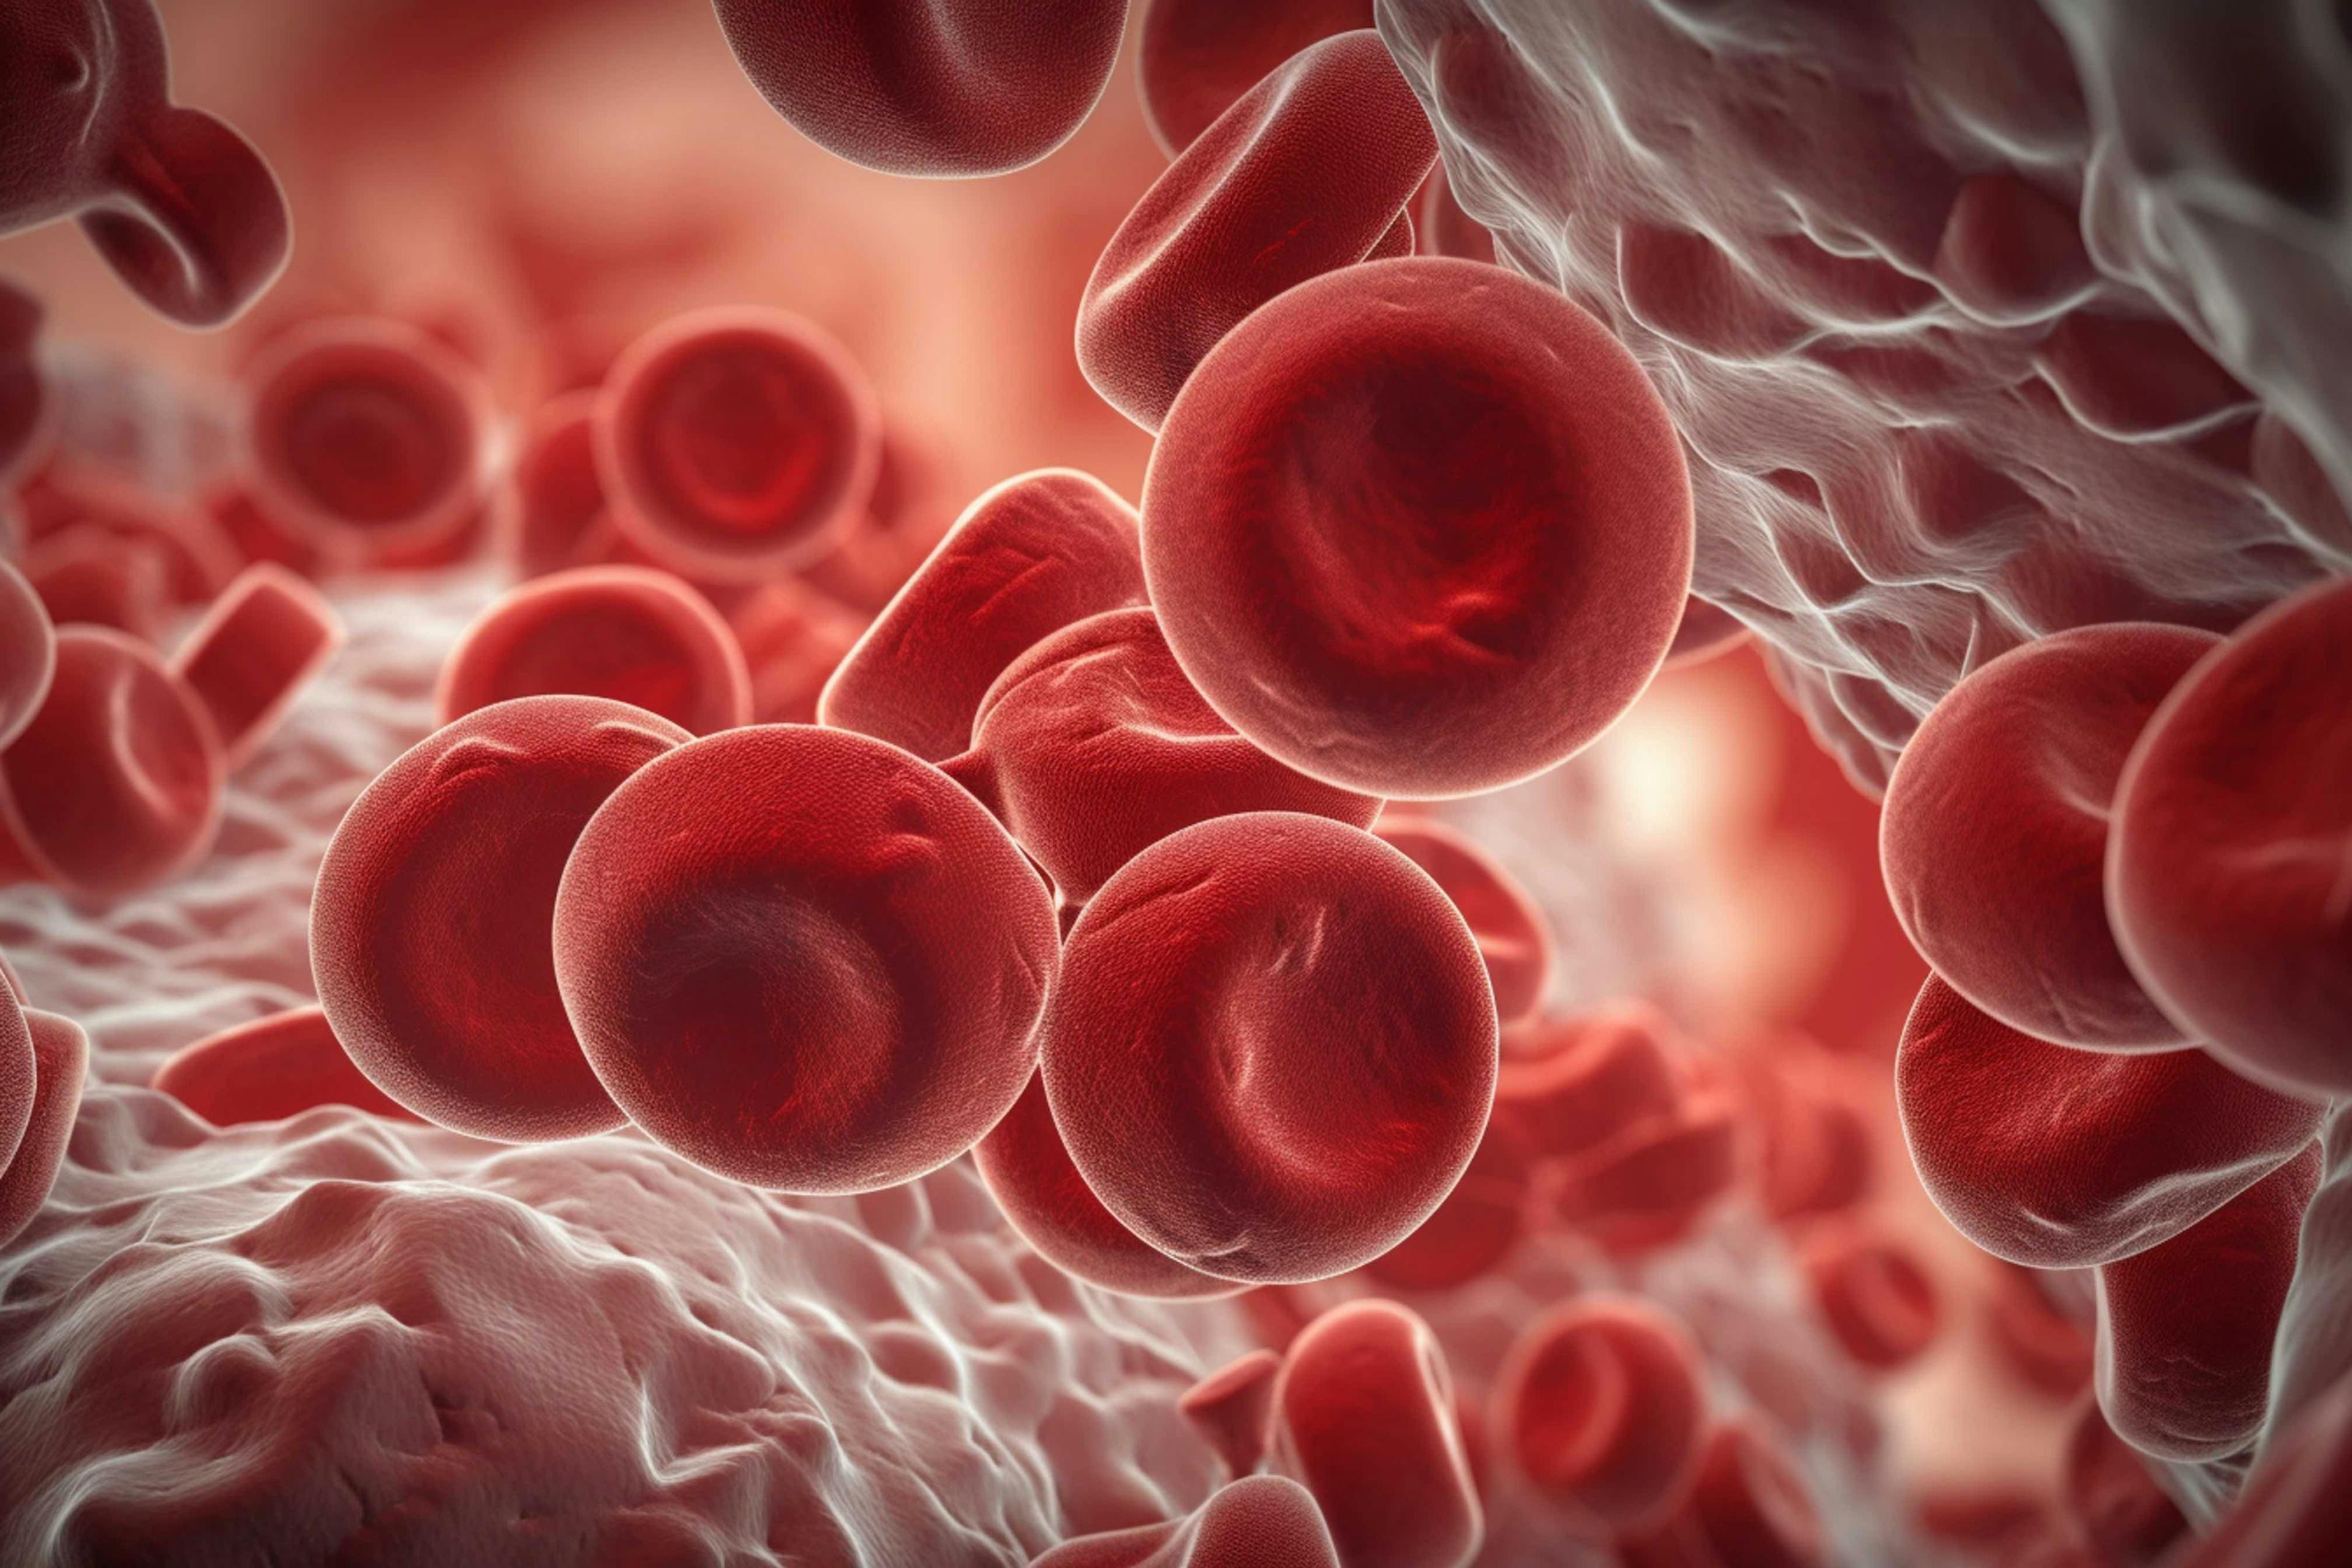 Blood Cells | Image Credit: © Катерина Євтехова - stock.adobe.com